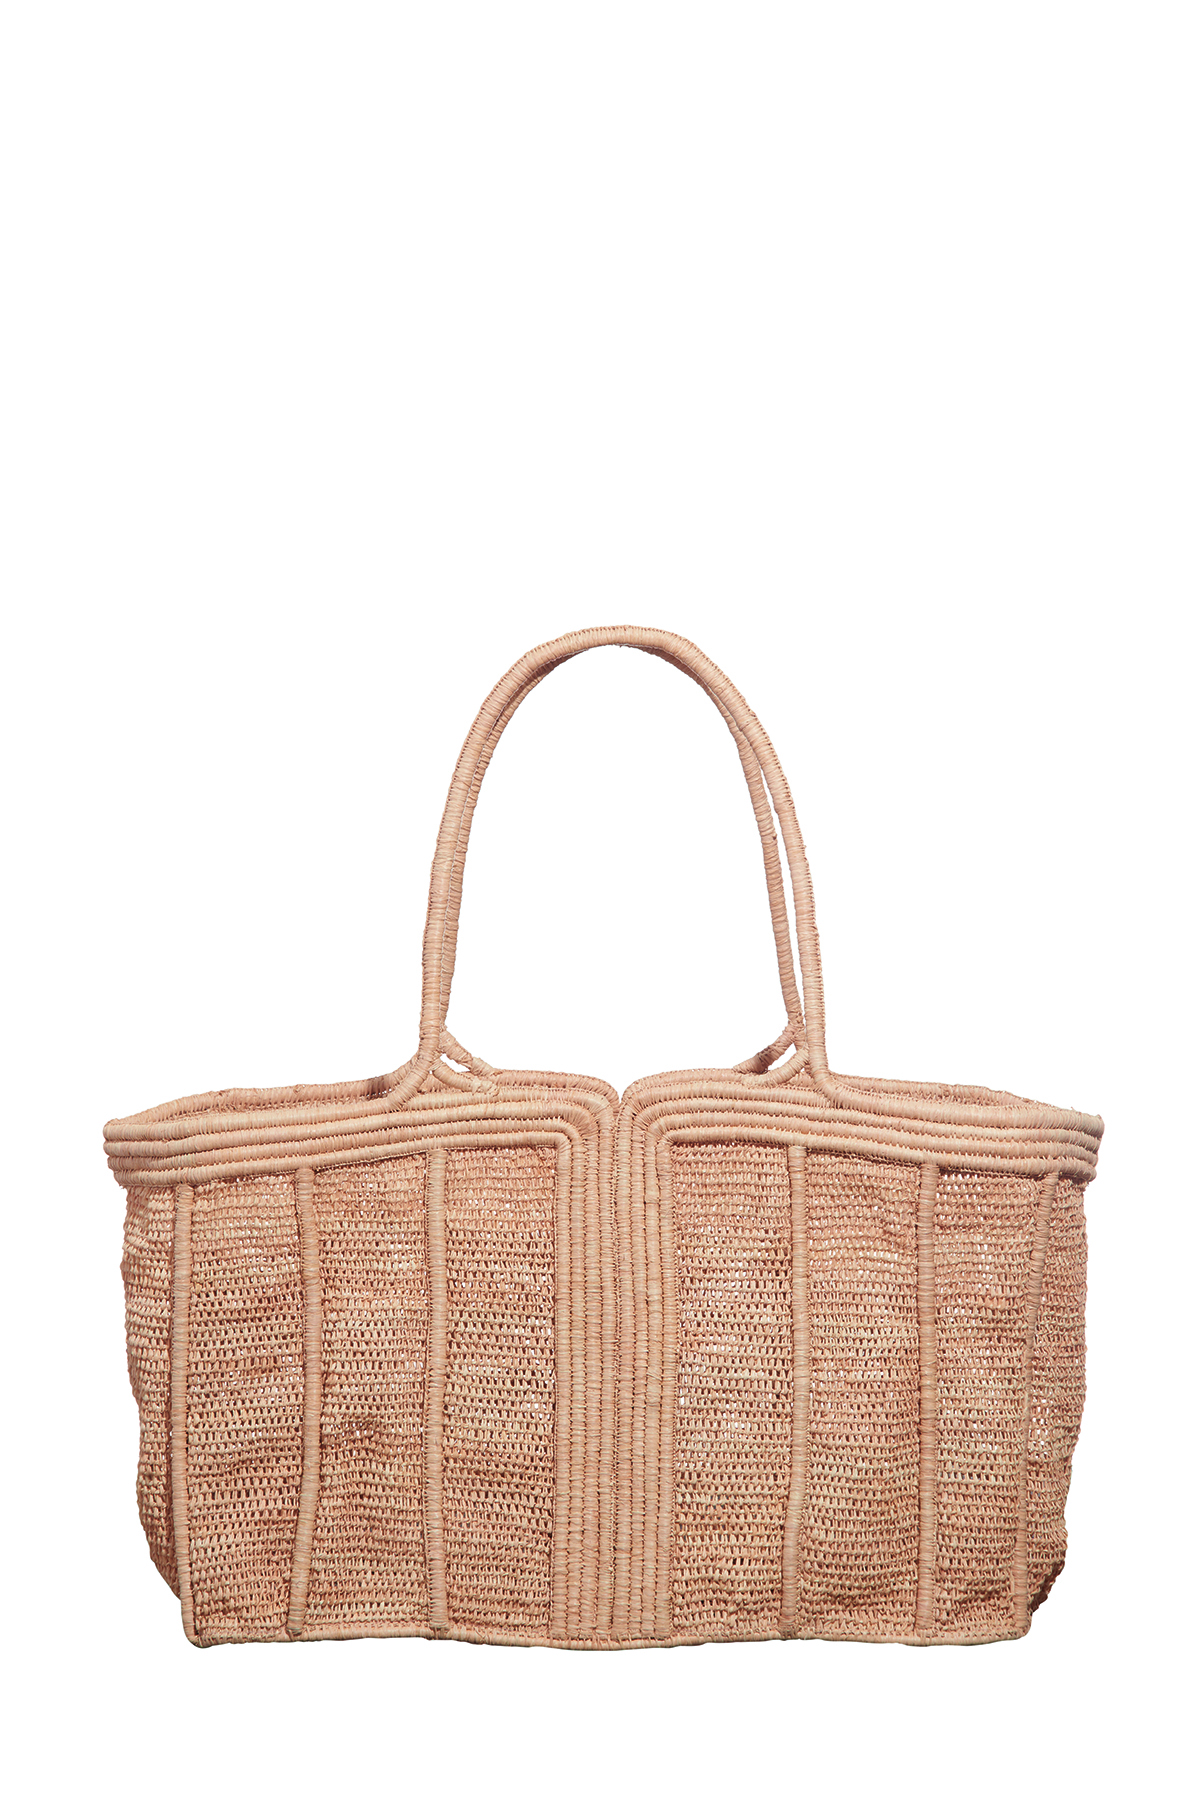 A beige bamboo grass woven beach bag